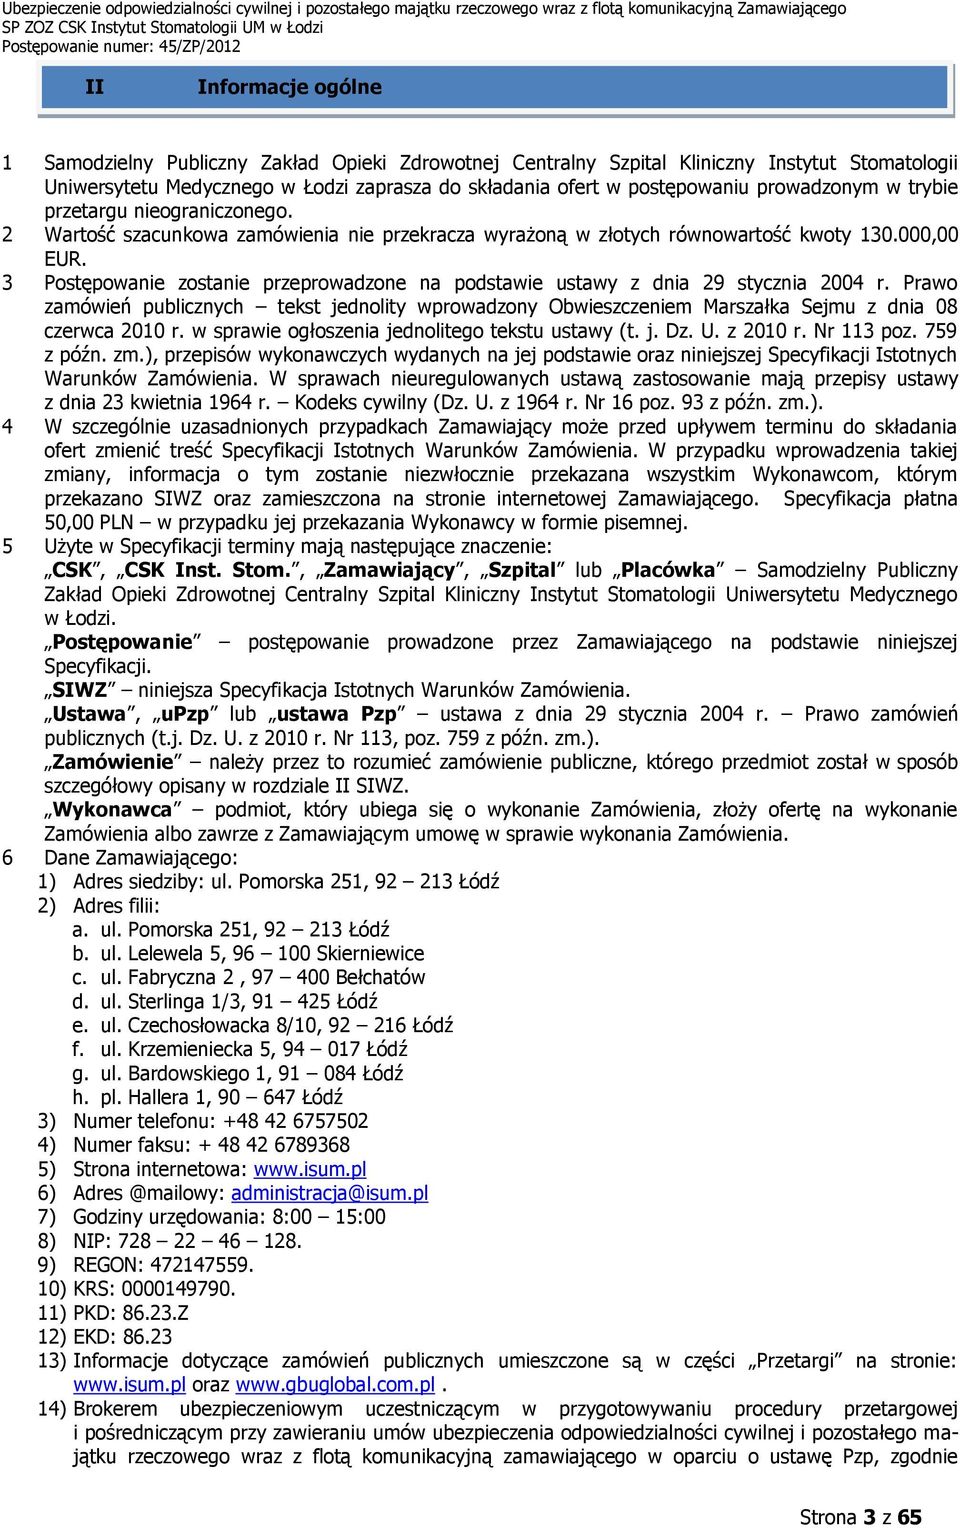 3 Postępowanie zostanie przeprowadzone na podstawie ustawy z dnia 29 stycznia 2004 r. Prawo zamówień publicznych tekst jednolity wprowadzony Obwieszczeniem Marszałka Sejmu z dnia 08 czerwca 2010 r.